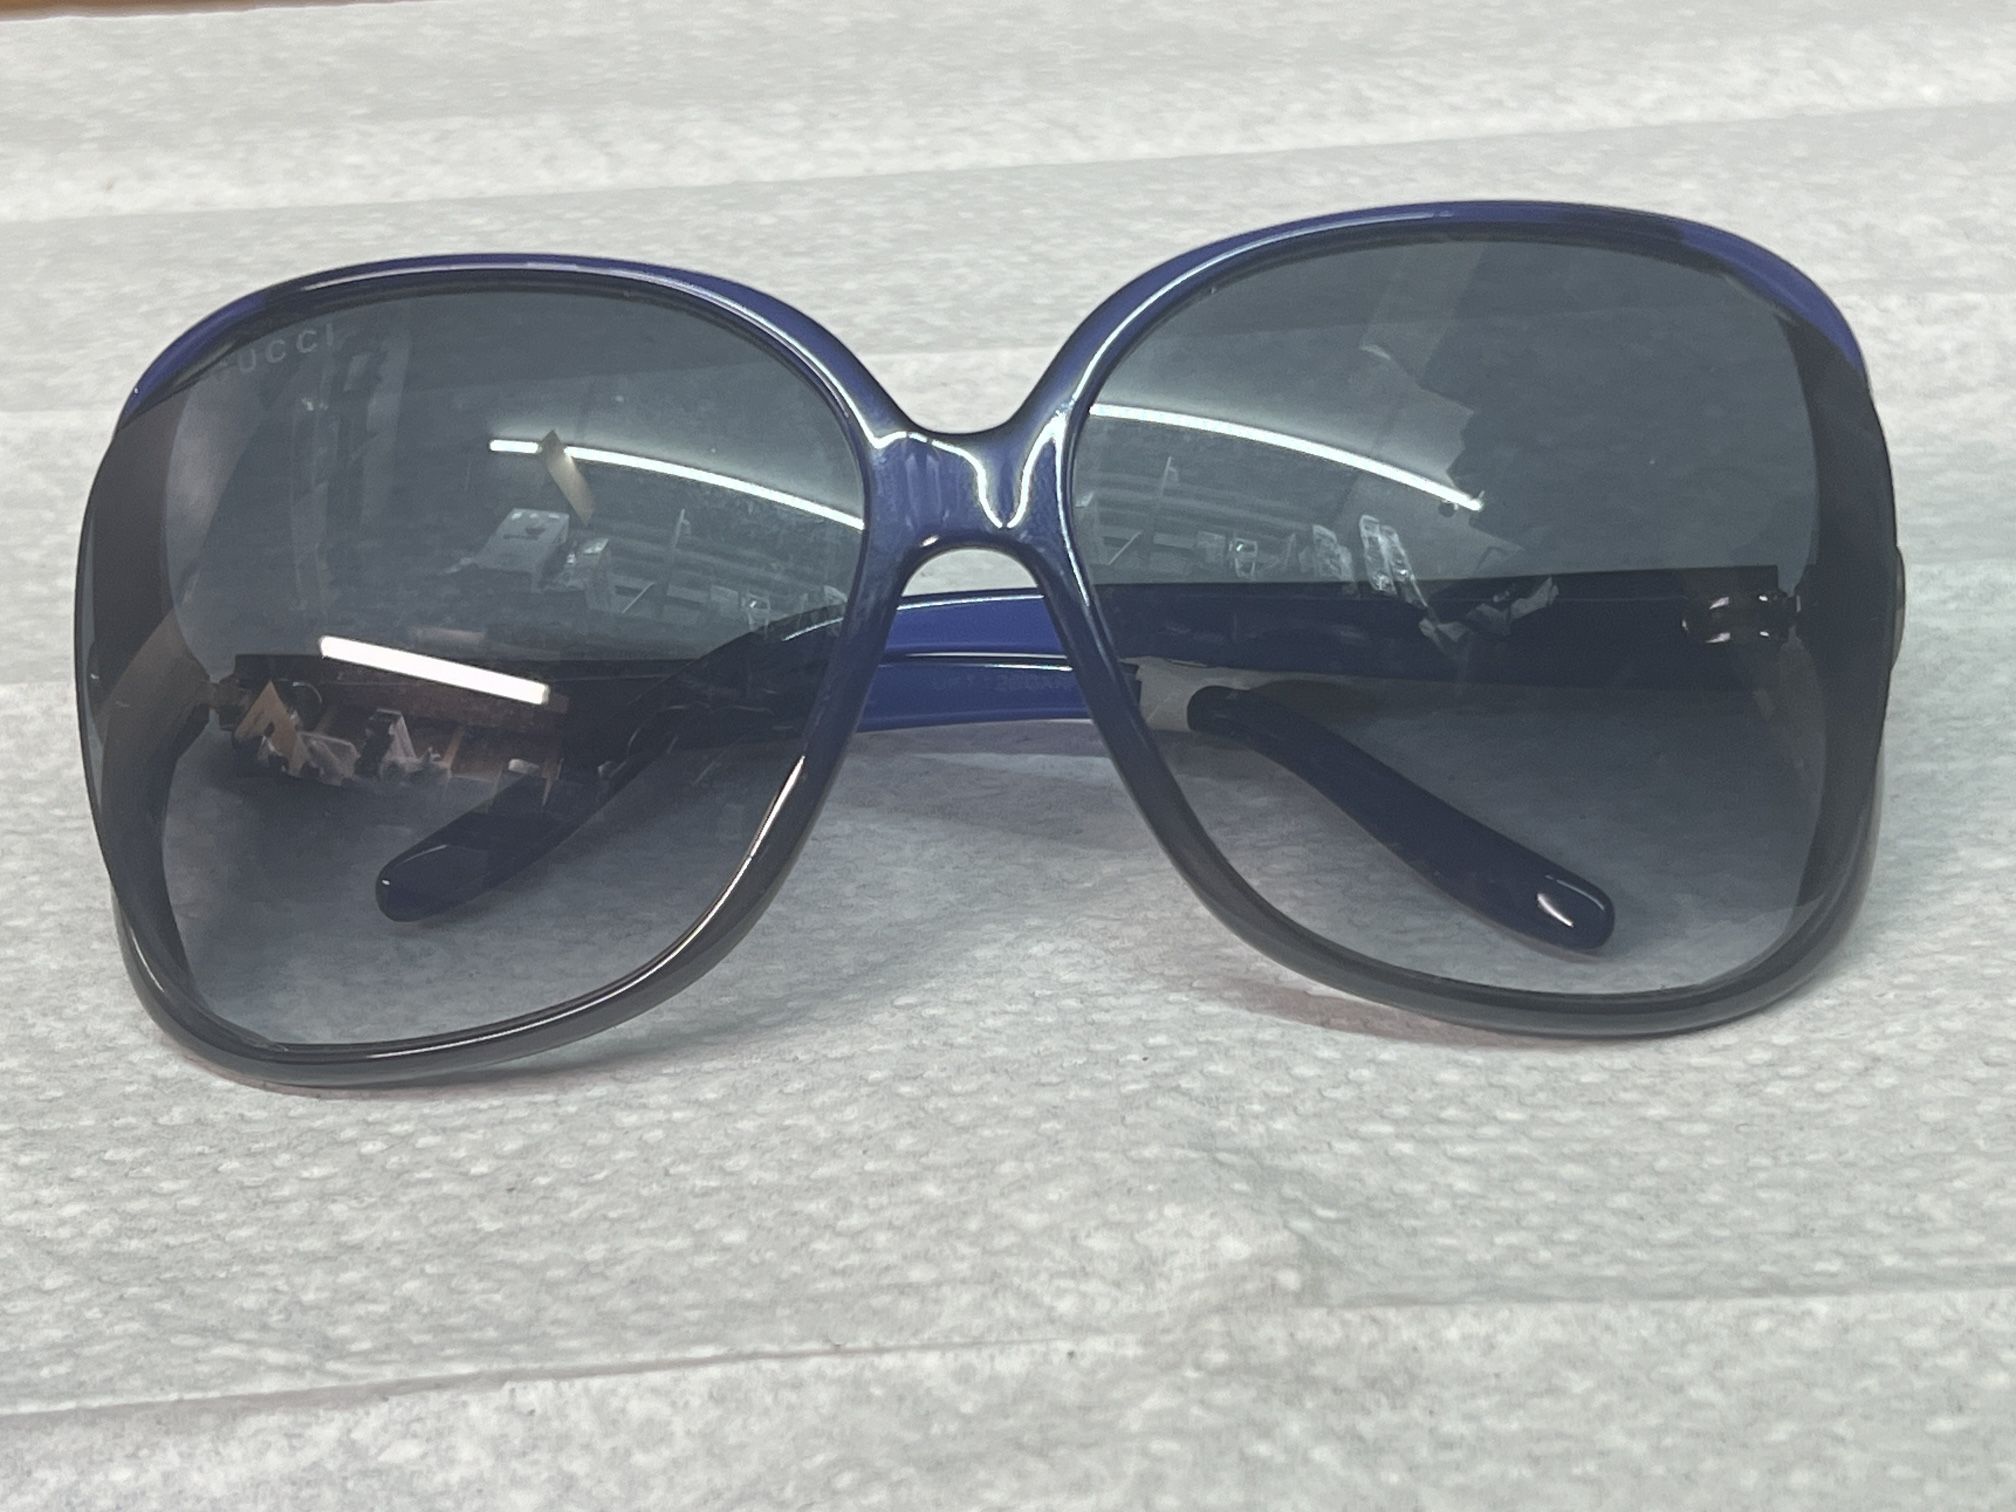 Apparel Sunglasses Gucci GG0506s🤑💰👉$ 150